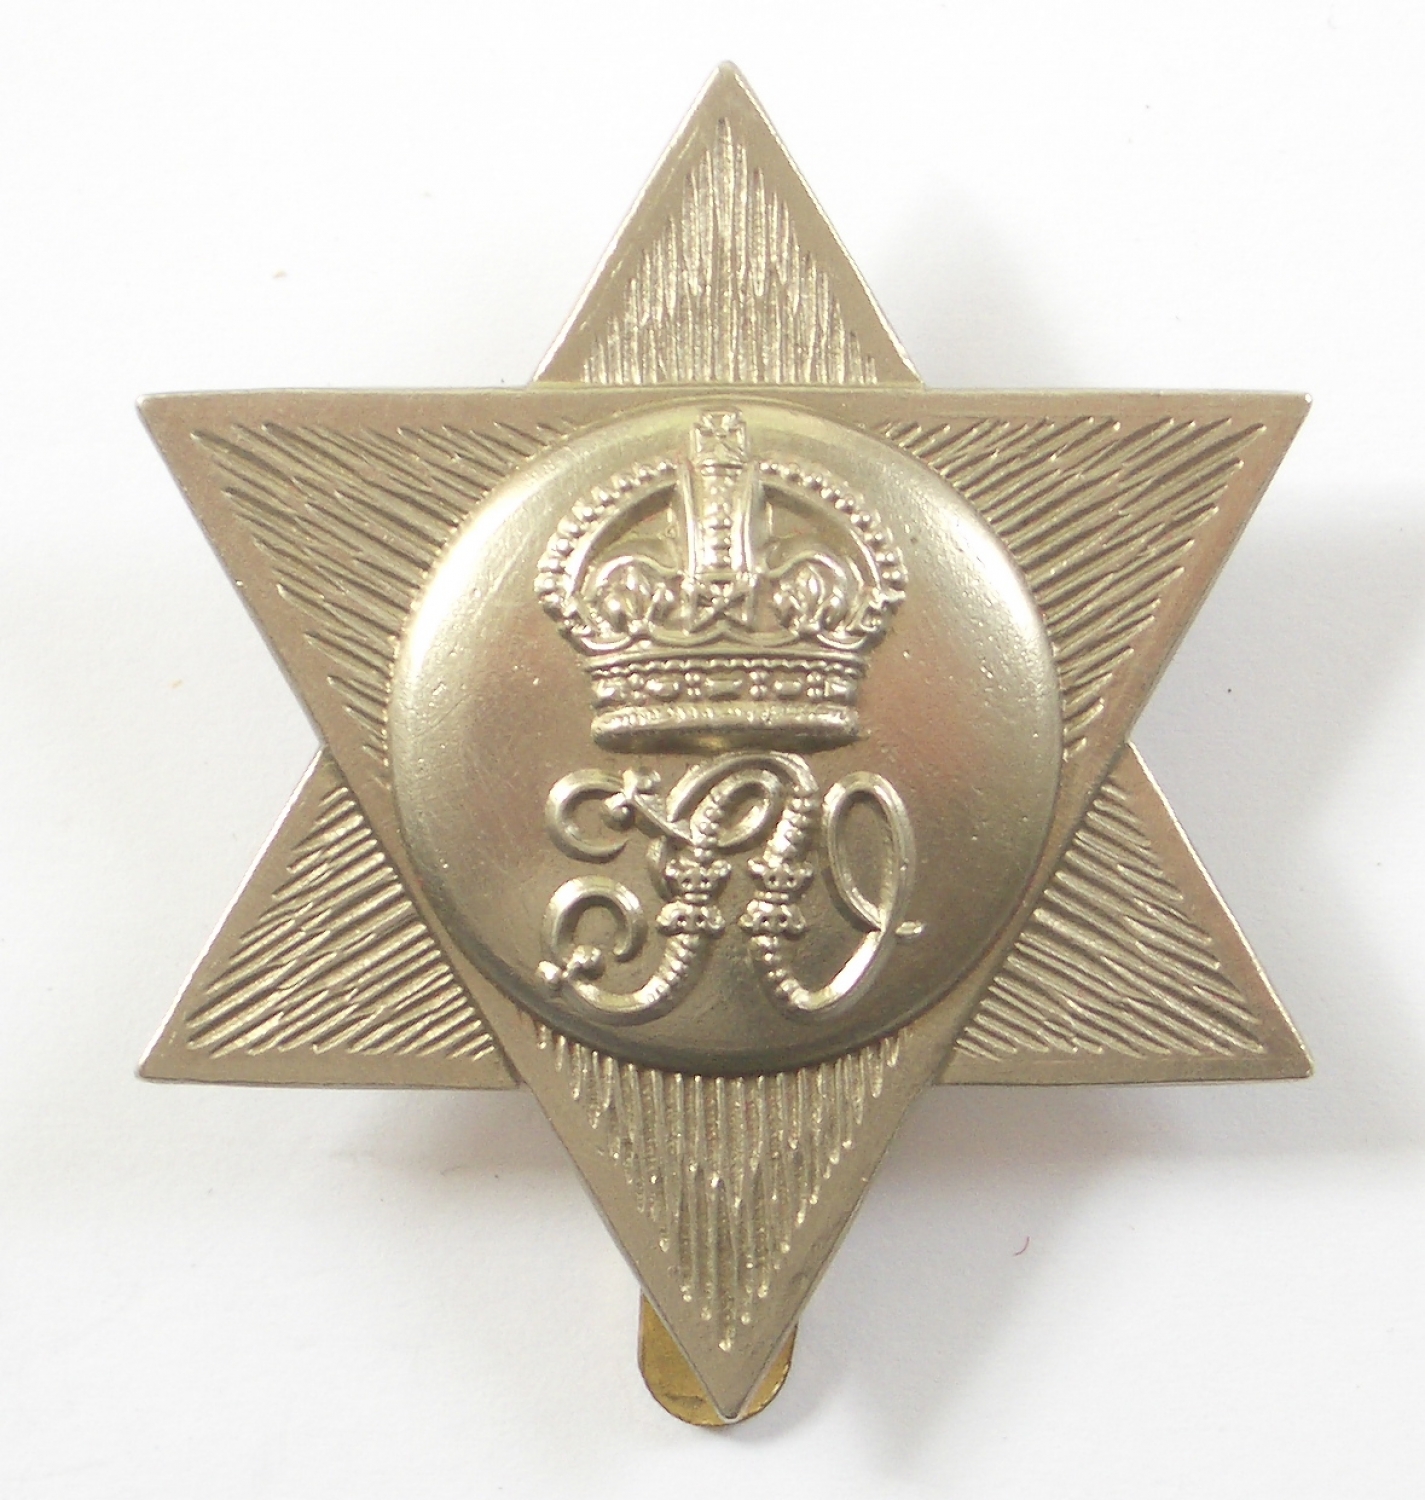 Trinidad Volunteers cap badge circa 1902-45